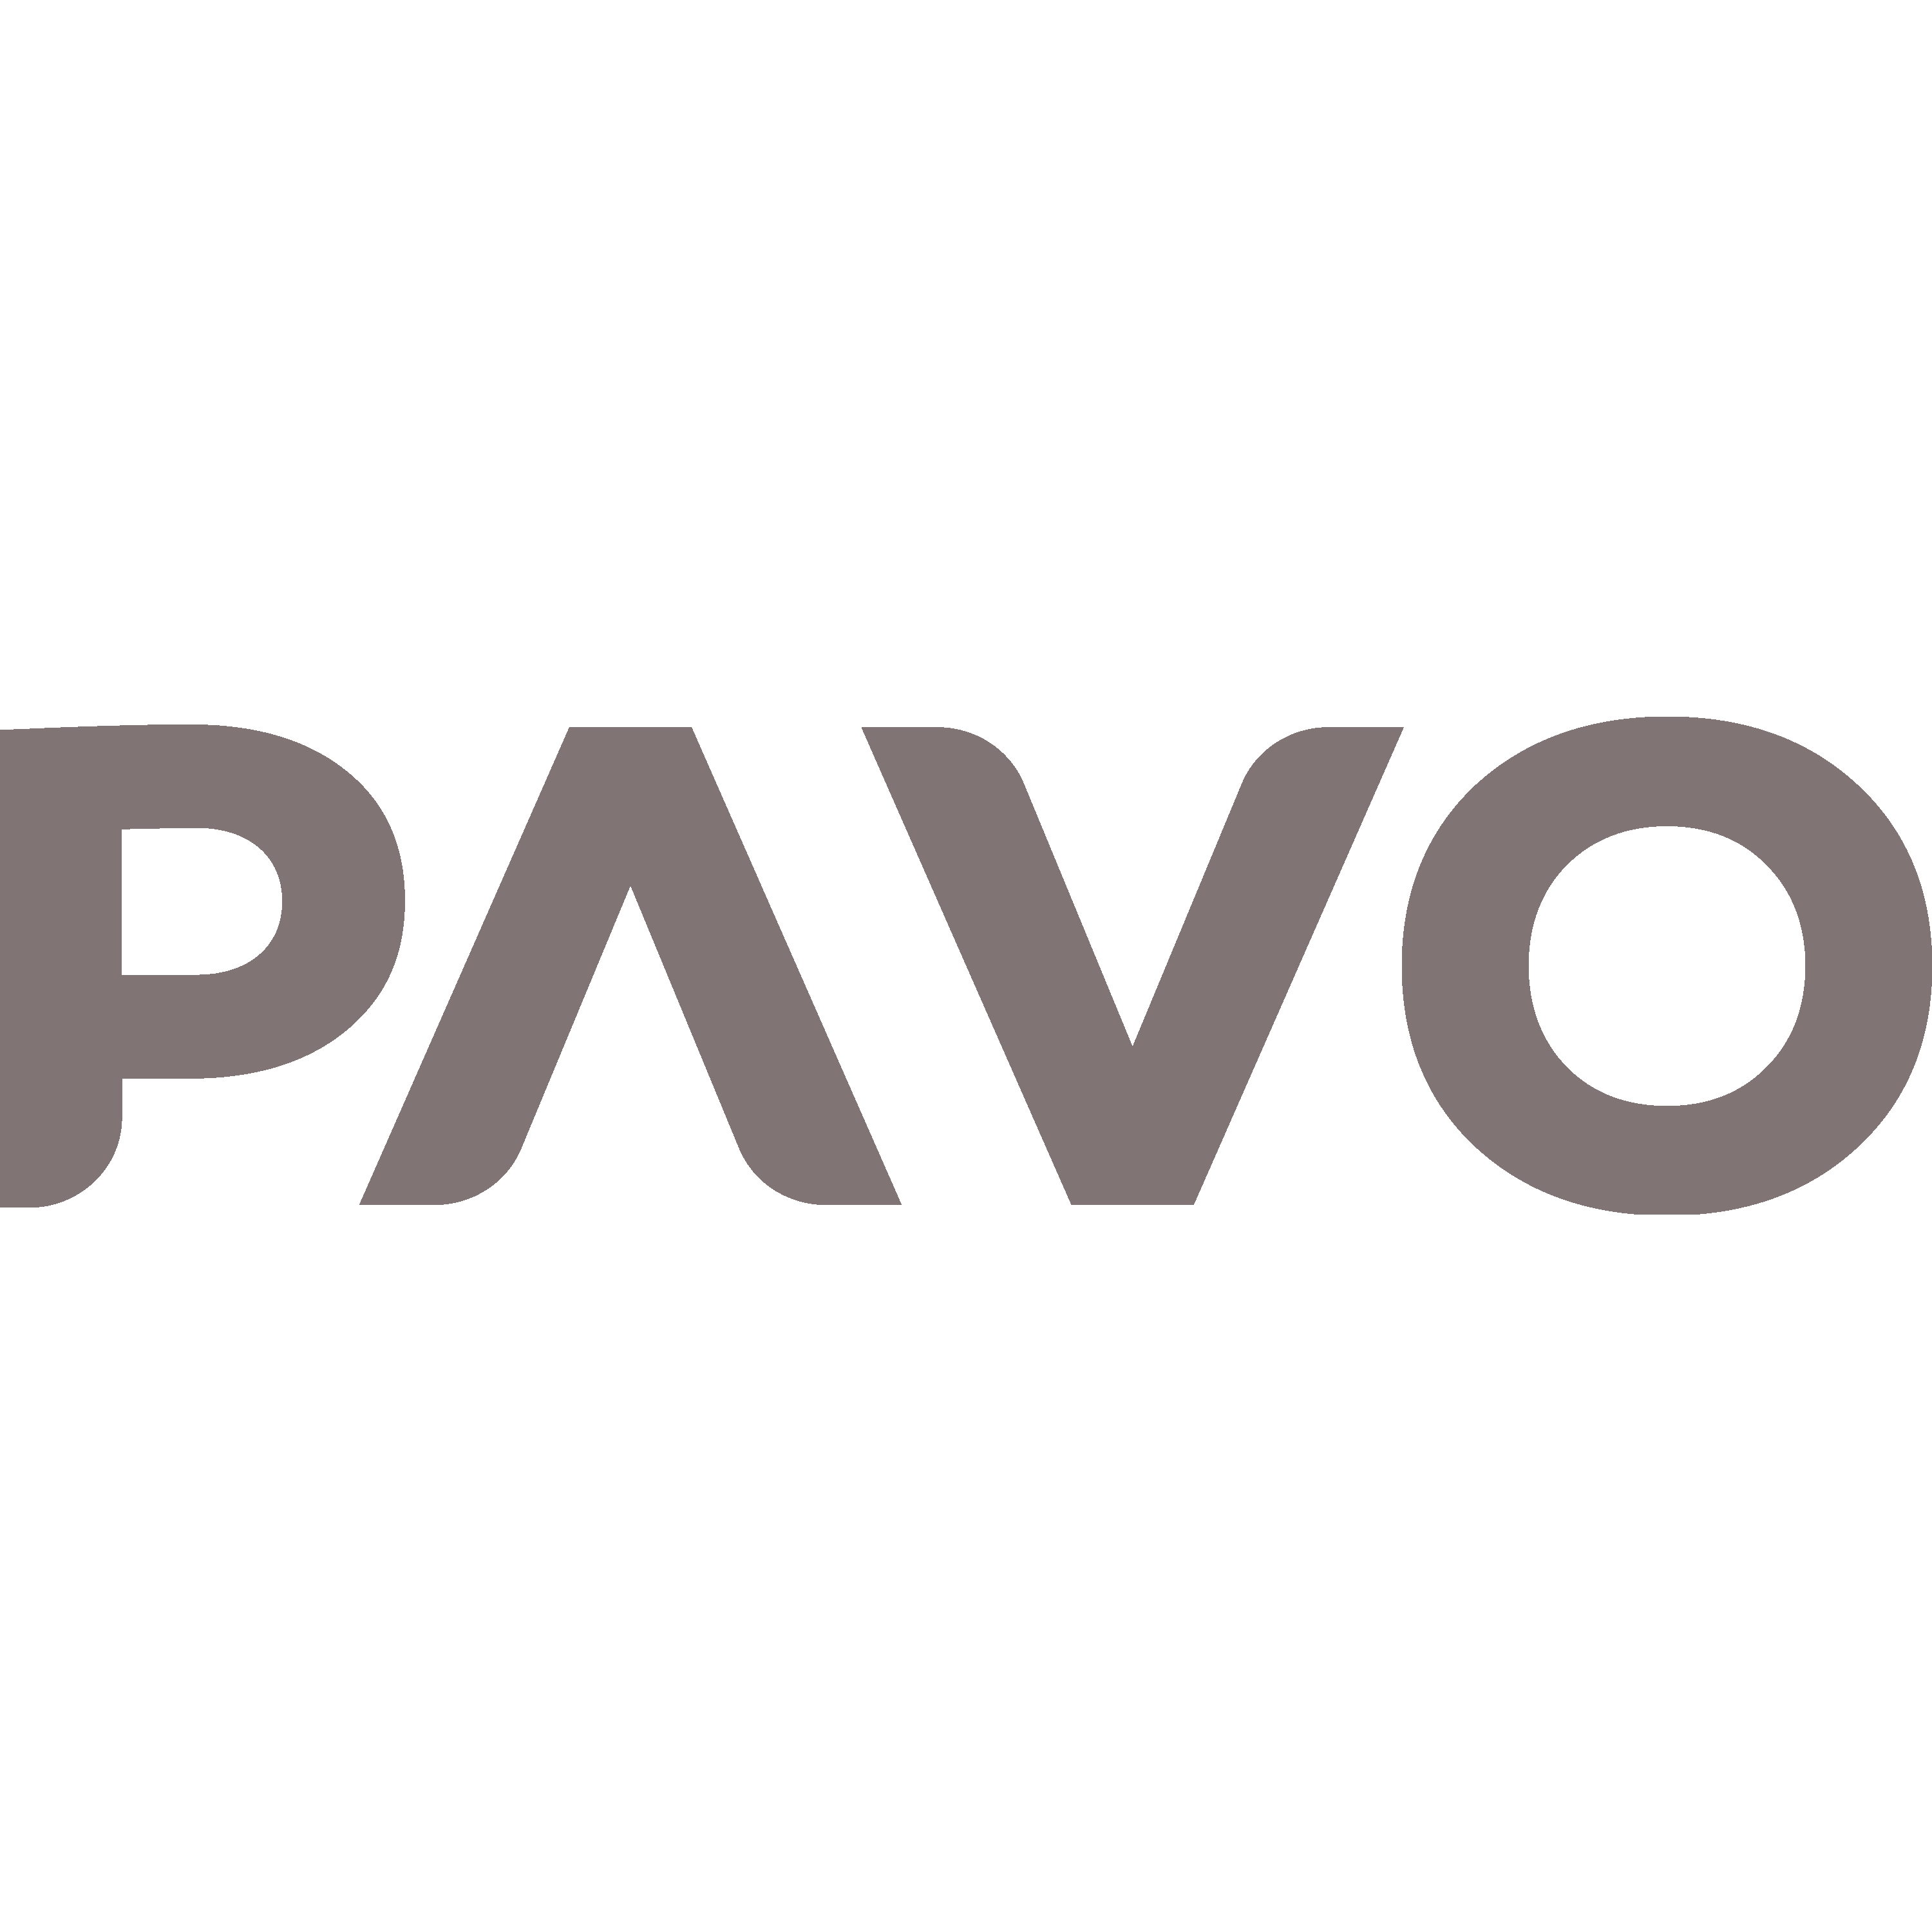 Pavo Logo Transparent Picture